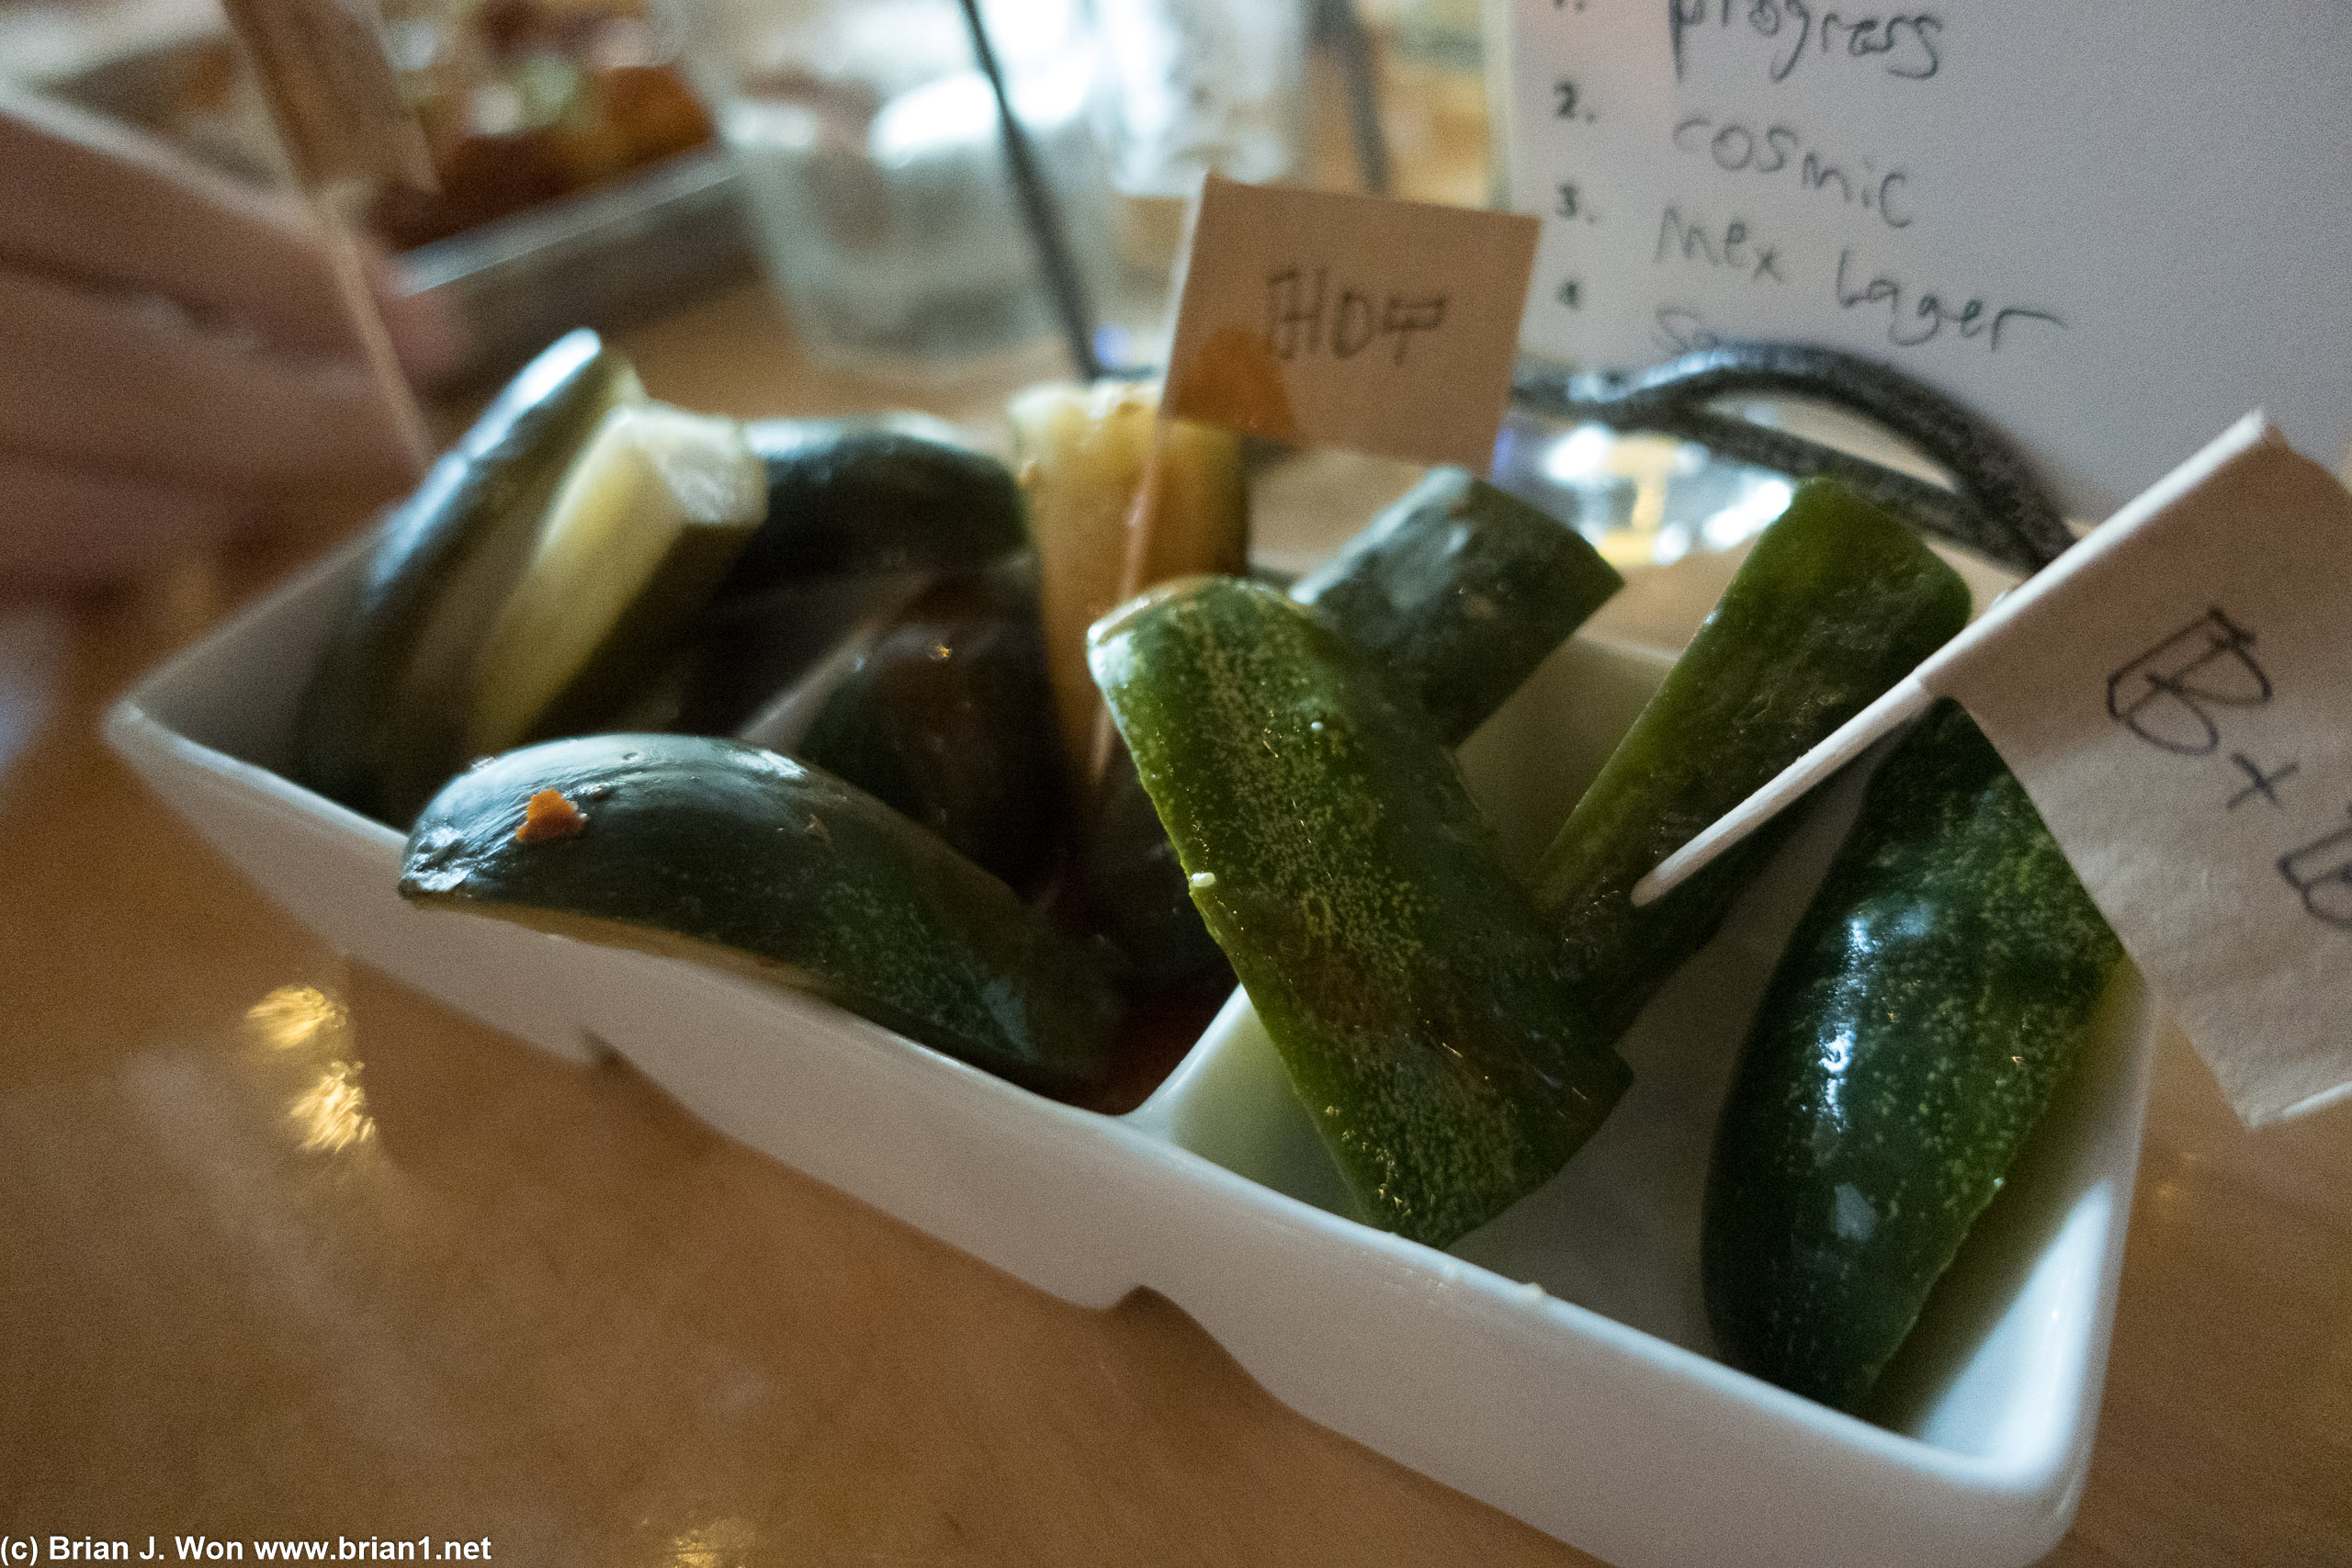 Katie's assortment of pickles.